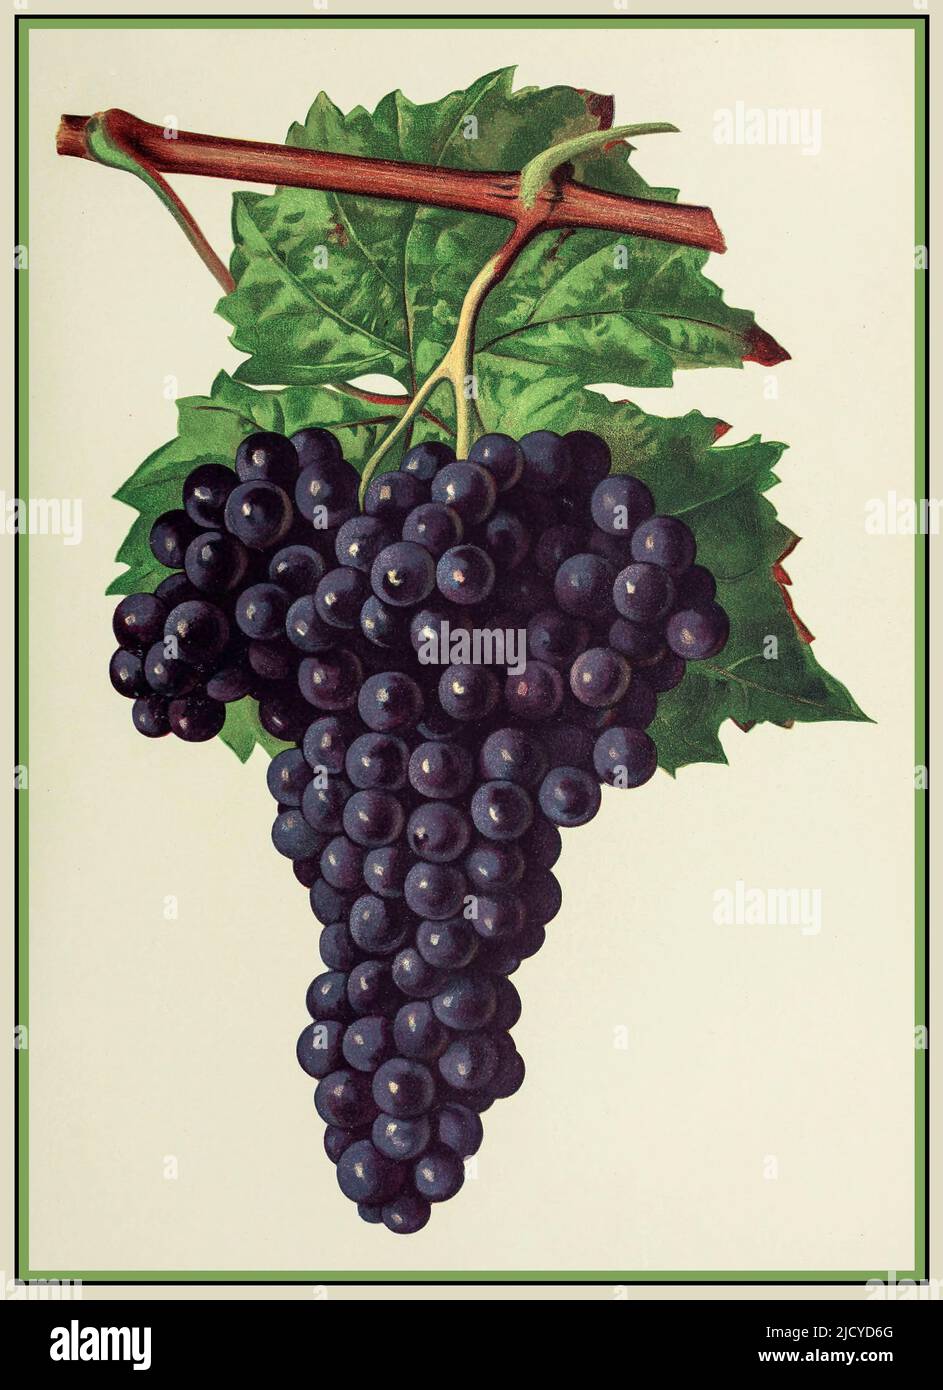 UVE DA VINO CHATUS grappoli maturi di uve da vino Chatus Lithograph Illustration Chatus è una variante di uva nera utilizzata esclusivamente nel processo di vinificazione del vino rosso. Il Chatus è un vitigno a bacca rossa originario dell'Ardèche. Questo vitigno, noto anche come Bournin (in dialetto piemontese) o Nebbiolo di dronero, è conosciuto con diversi sinonimi a seconda del luogo di coltivazione. Questo vitigno è anche denominato Brunetta o Scarlattinin nella Val di Susa o Branchet nel Canavese. Italia Foto Stock